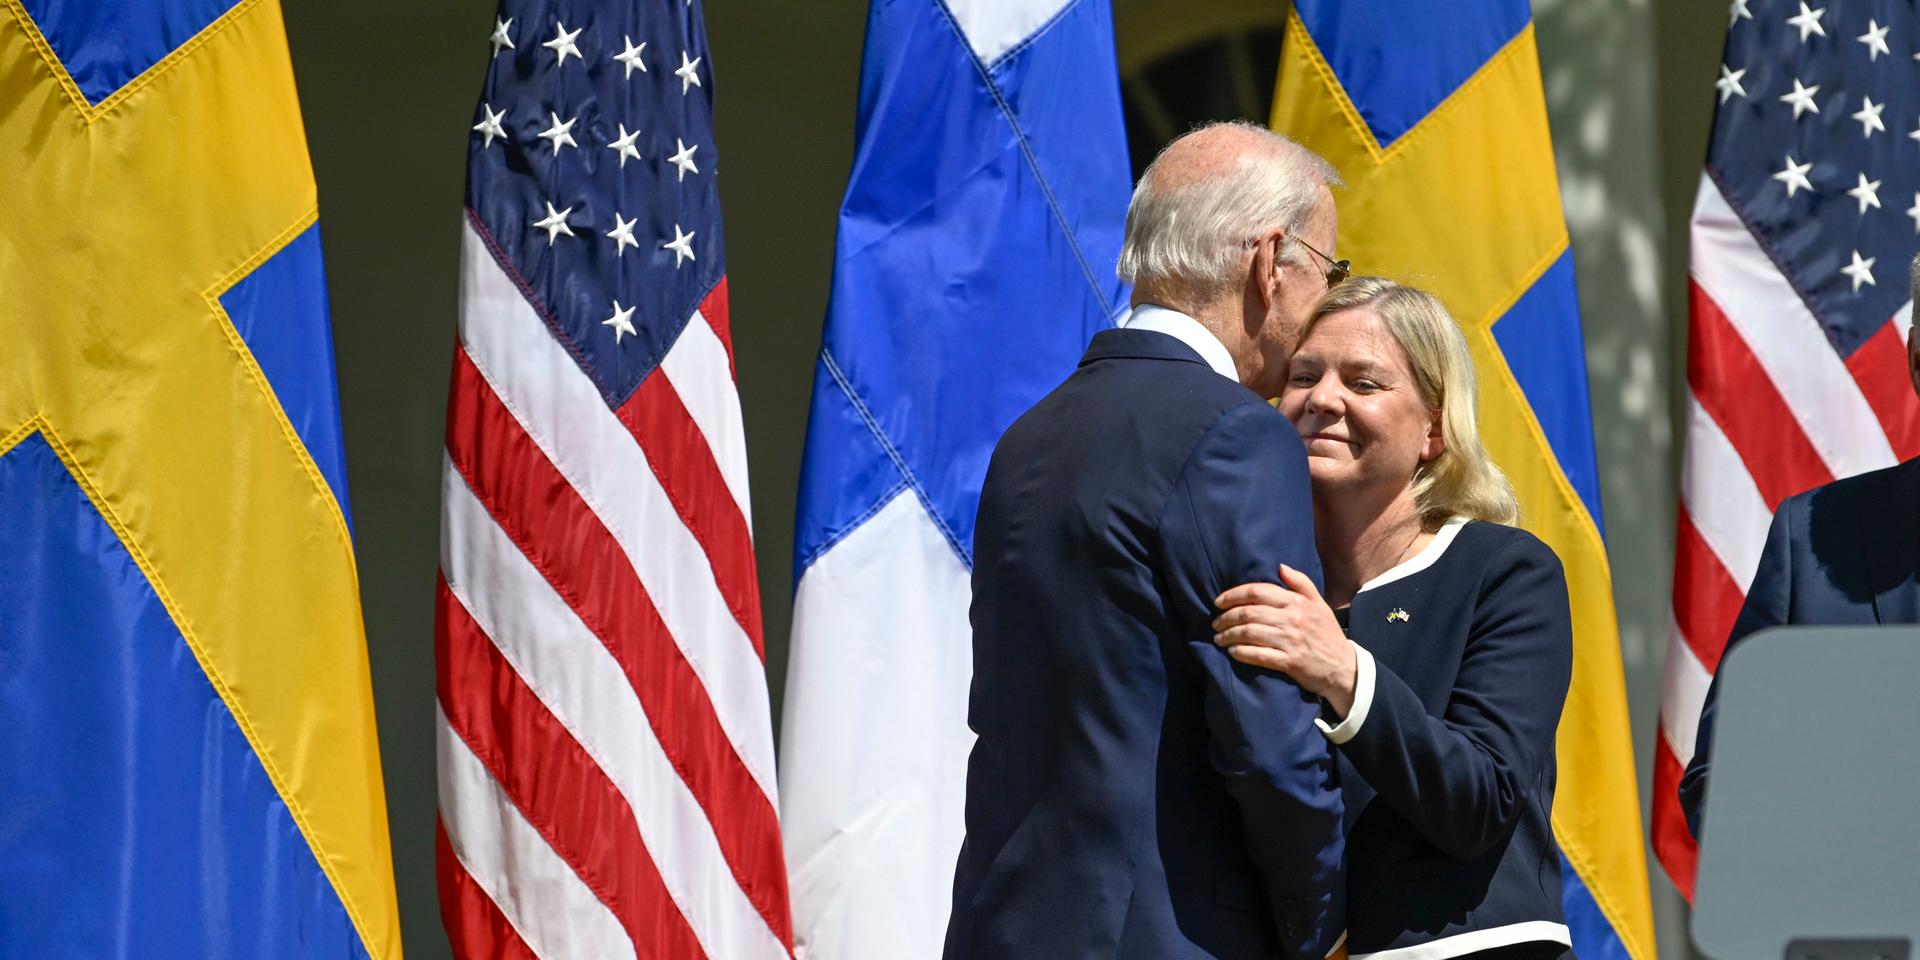 USA:s president Joe Biden och statsminister Magdalena Andersson vid presskonferensen efter mötet i Vita huset.